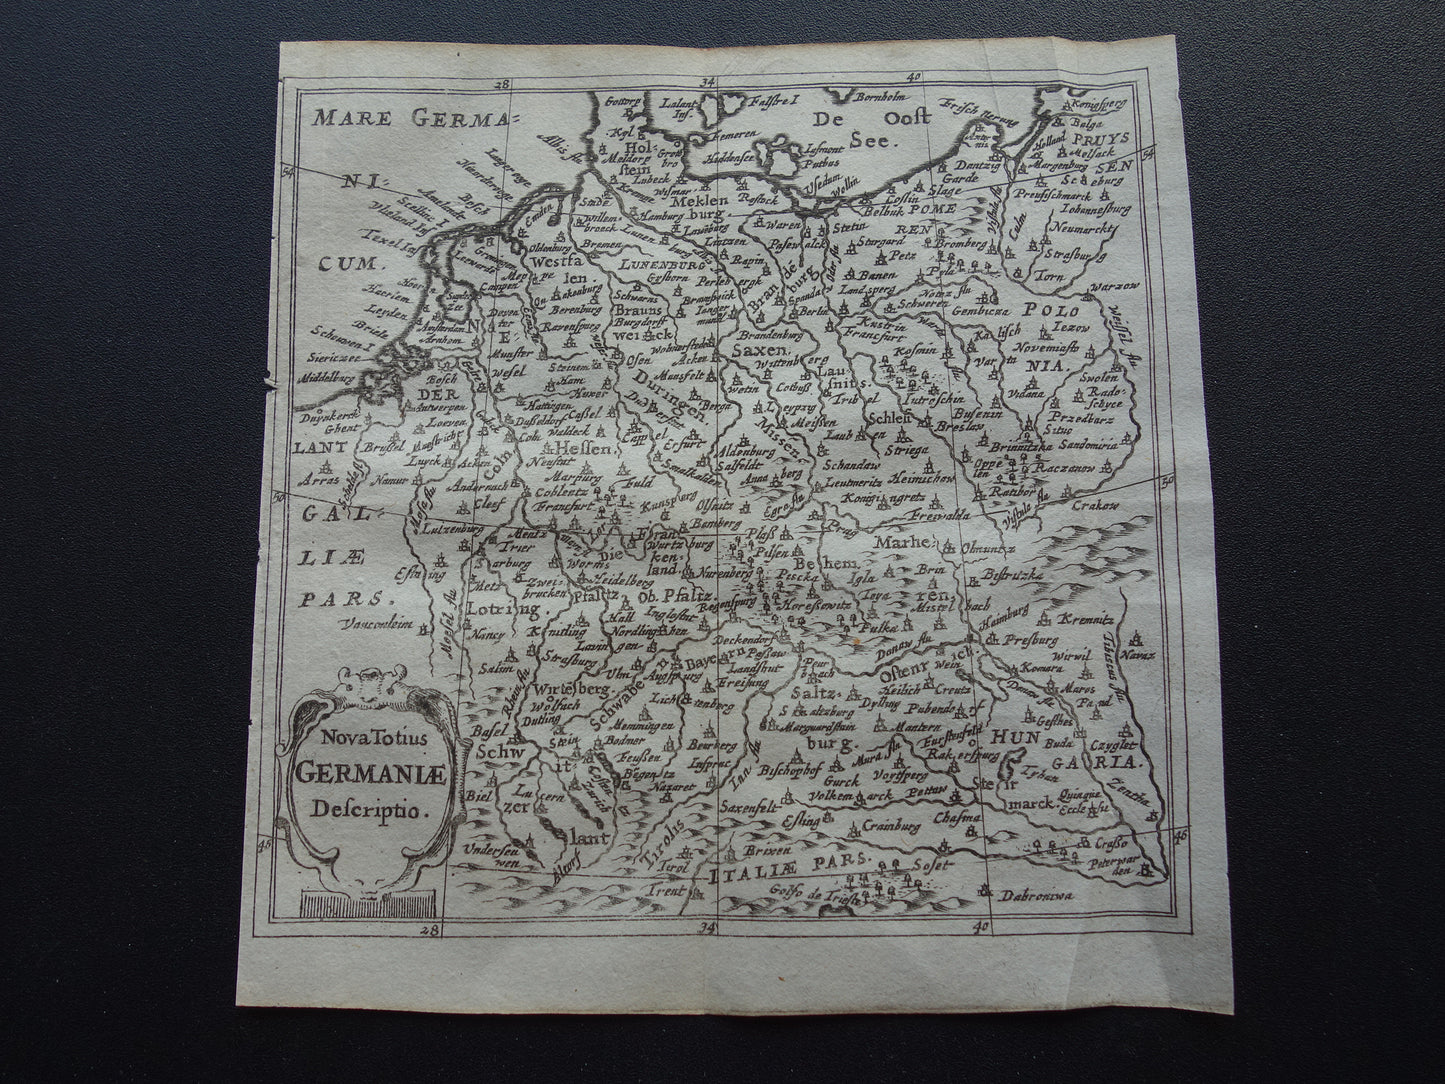 DUITSLAND 360+ jaar oude kaart van Duitsland 1661 originele antieke Nederlandse landkaart zeer klein formaat